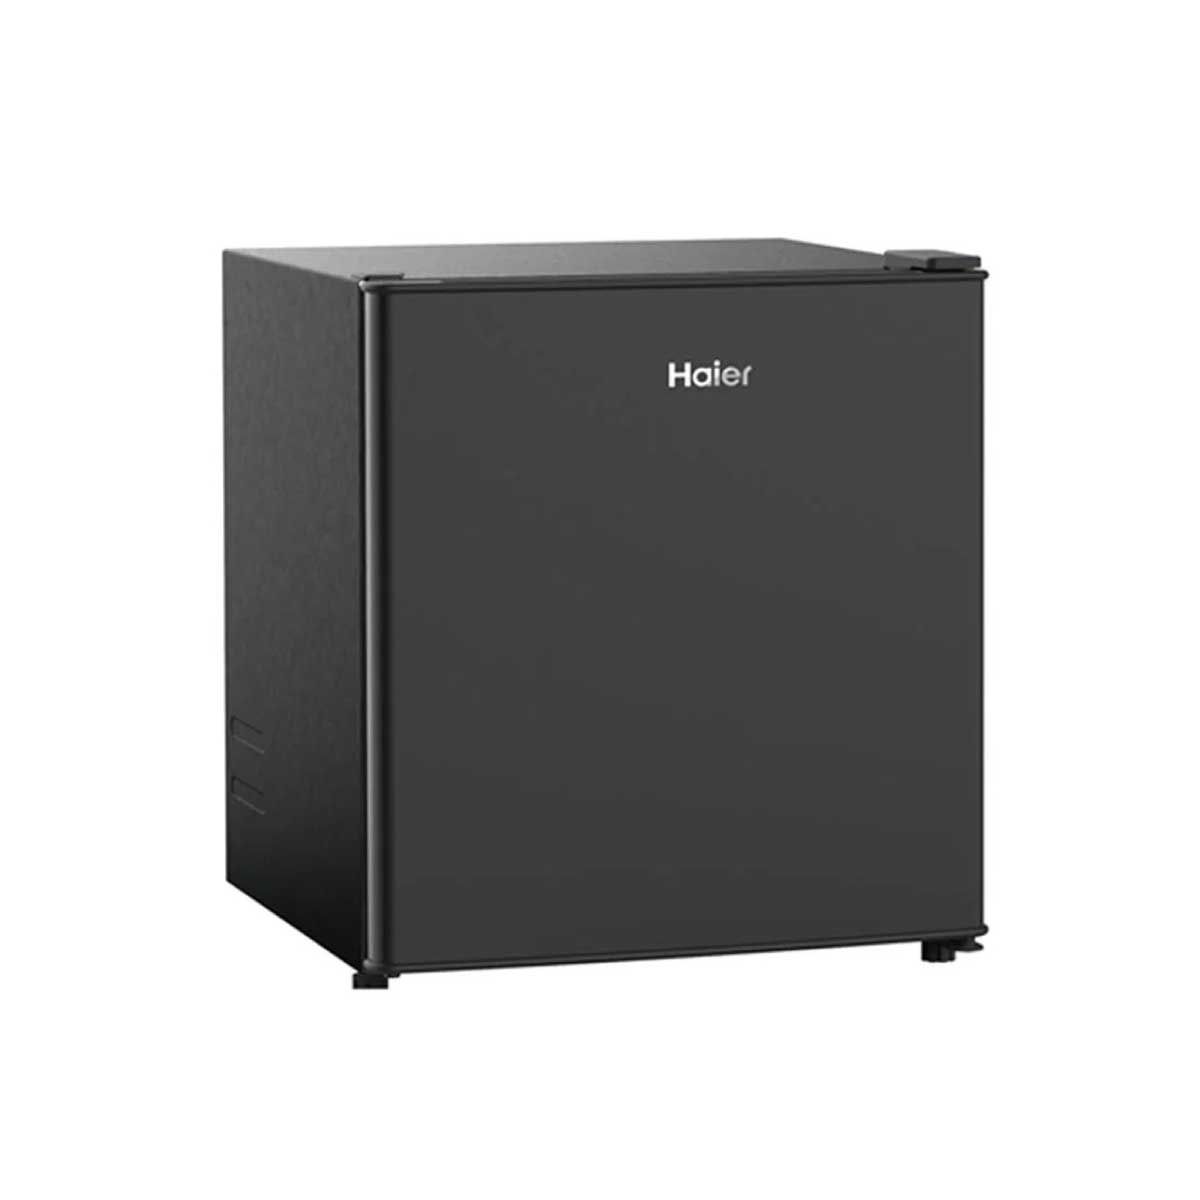 HAIER ตู้เย็นมินิบาร์ 1.4Q สีดำ รุ่นHR-SD55